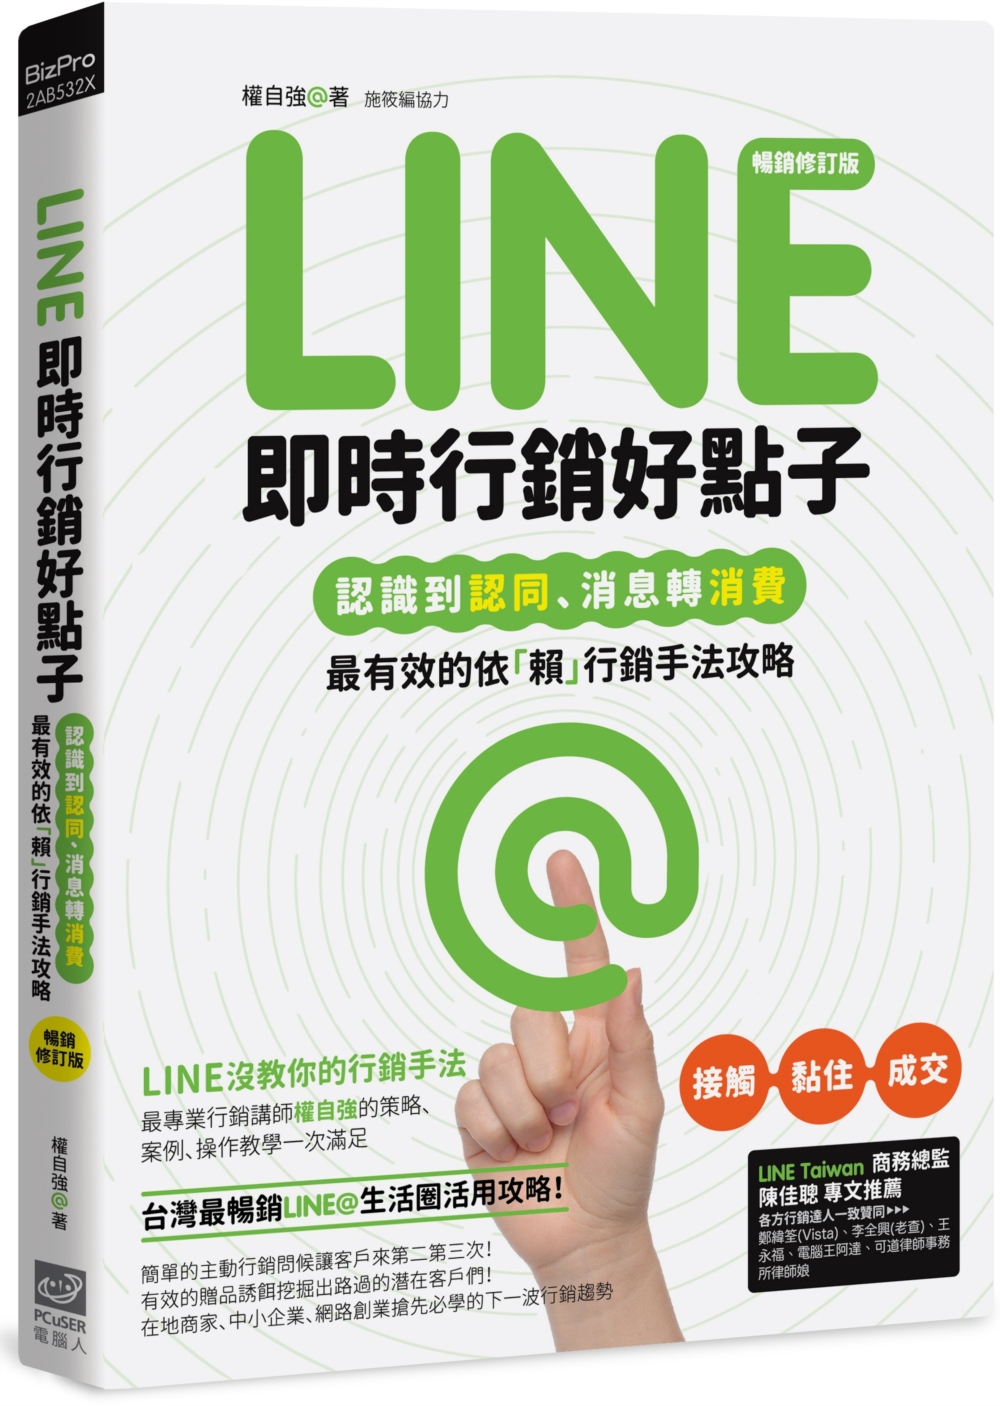 Line即時行銷好點子：認識到認同、消息轉消費，最有效的依「...